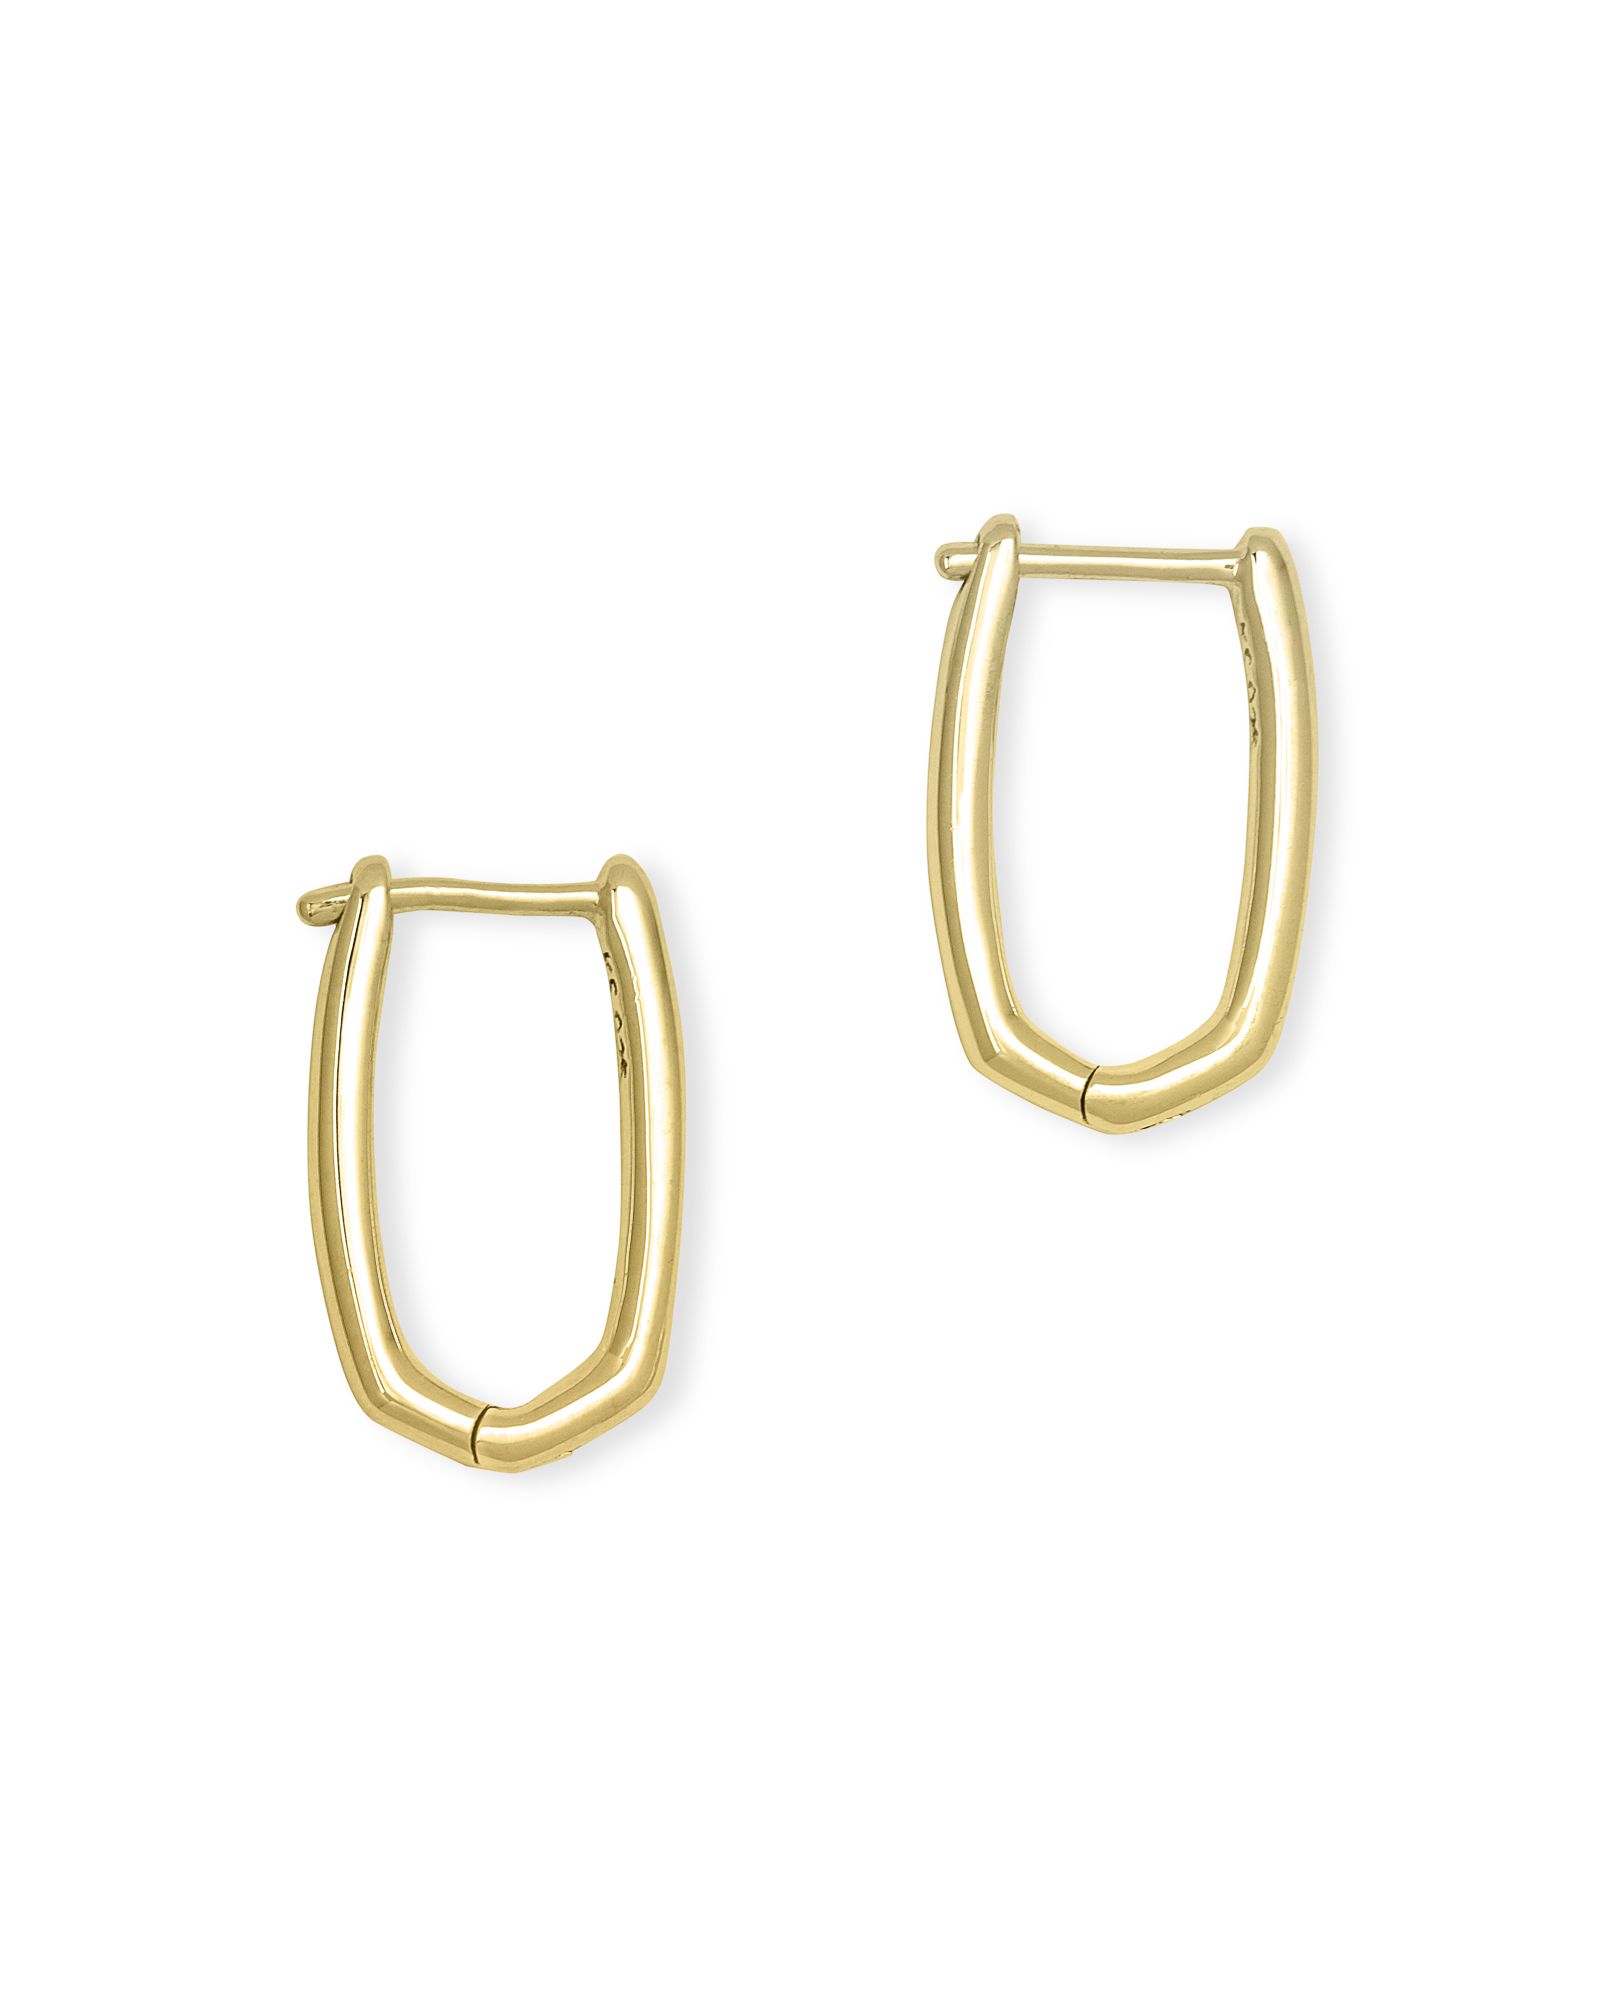 Ellen Huggie Earrings in 18k Gold Vermeil | Kendra Scott | Kendra Scott